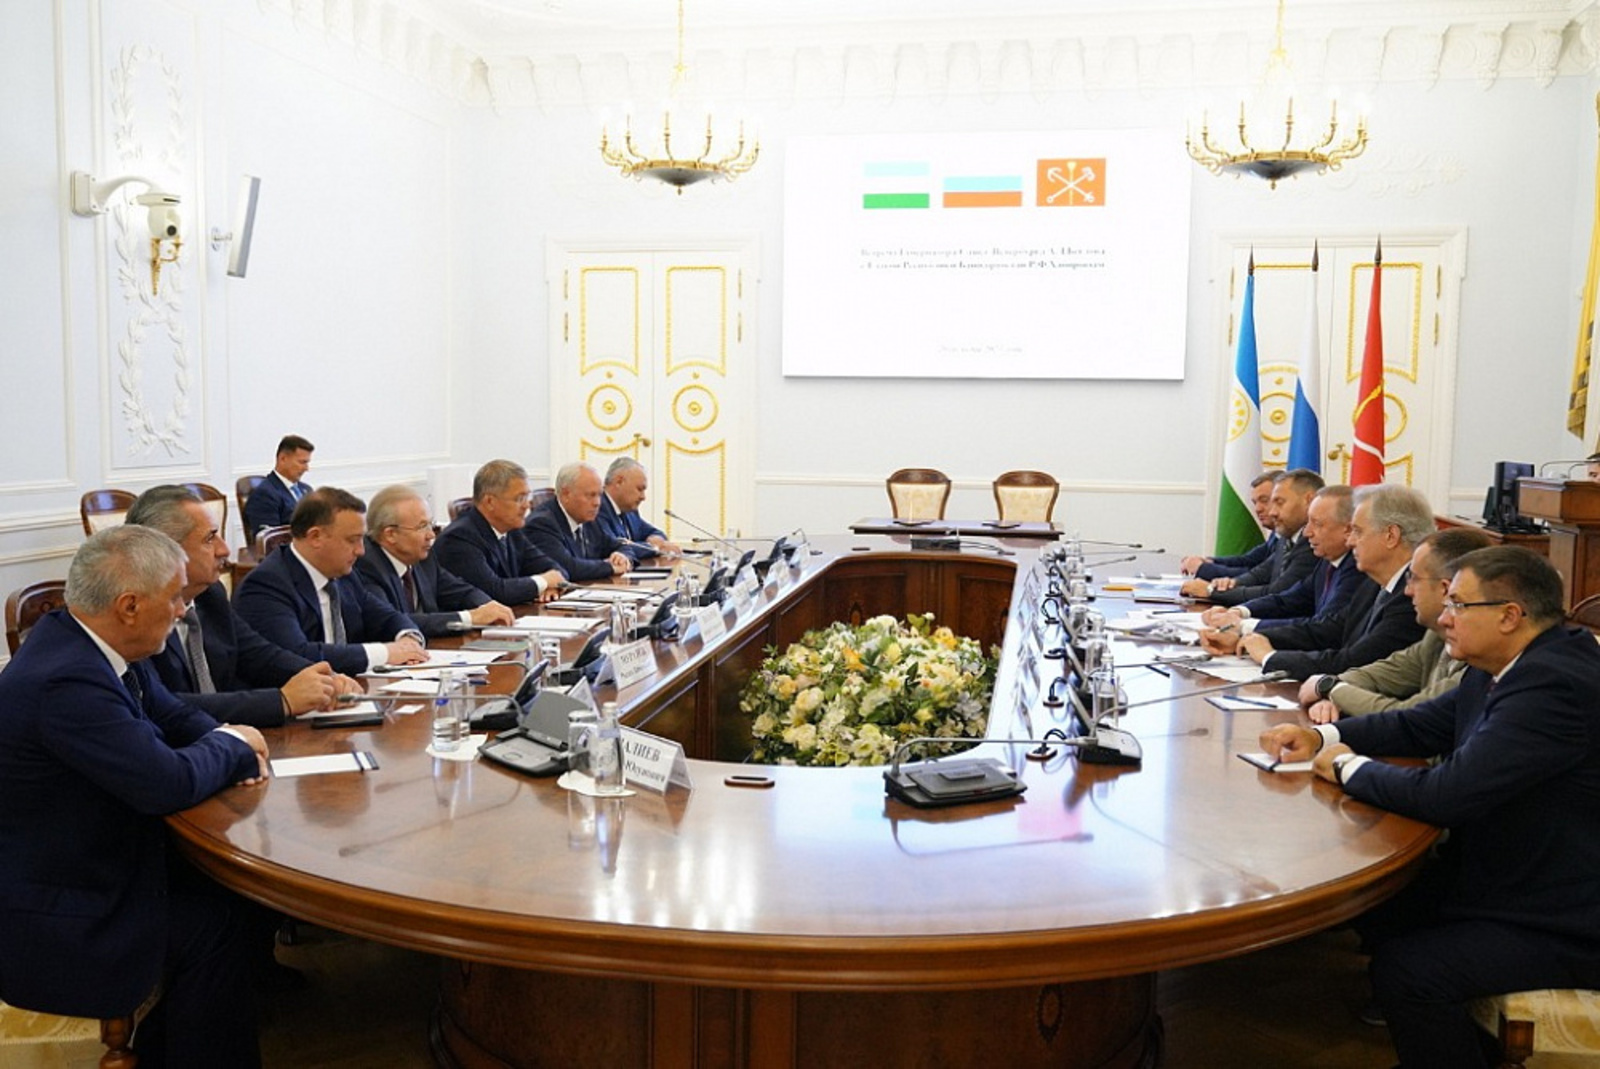 Башкортостан и Санкт-Петербург утвердили дорожную карту развития сотрудничества до 2027 года